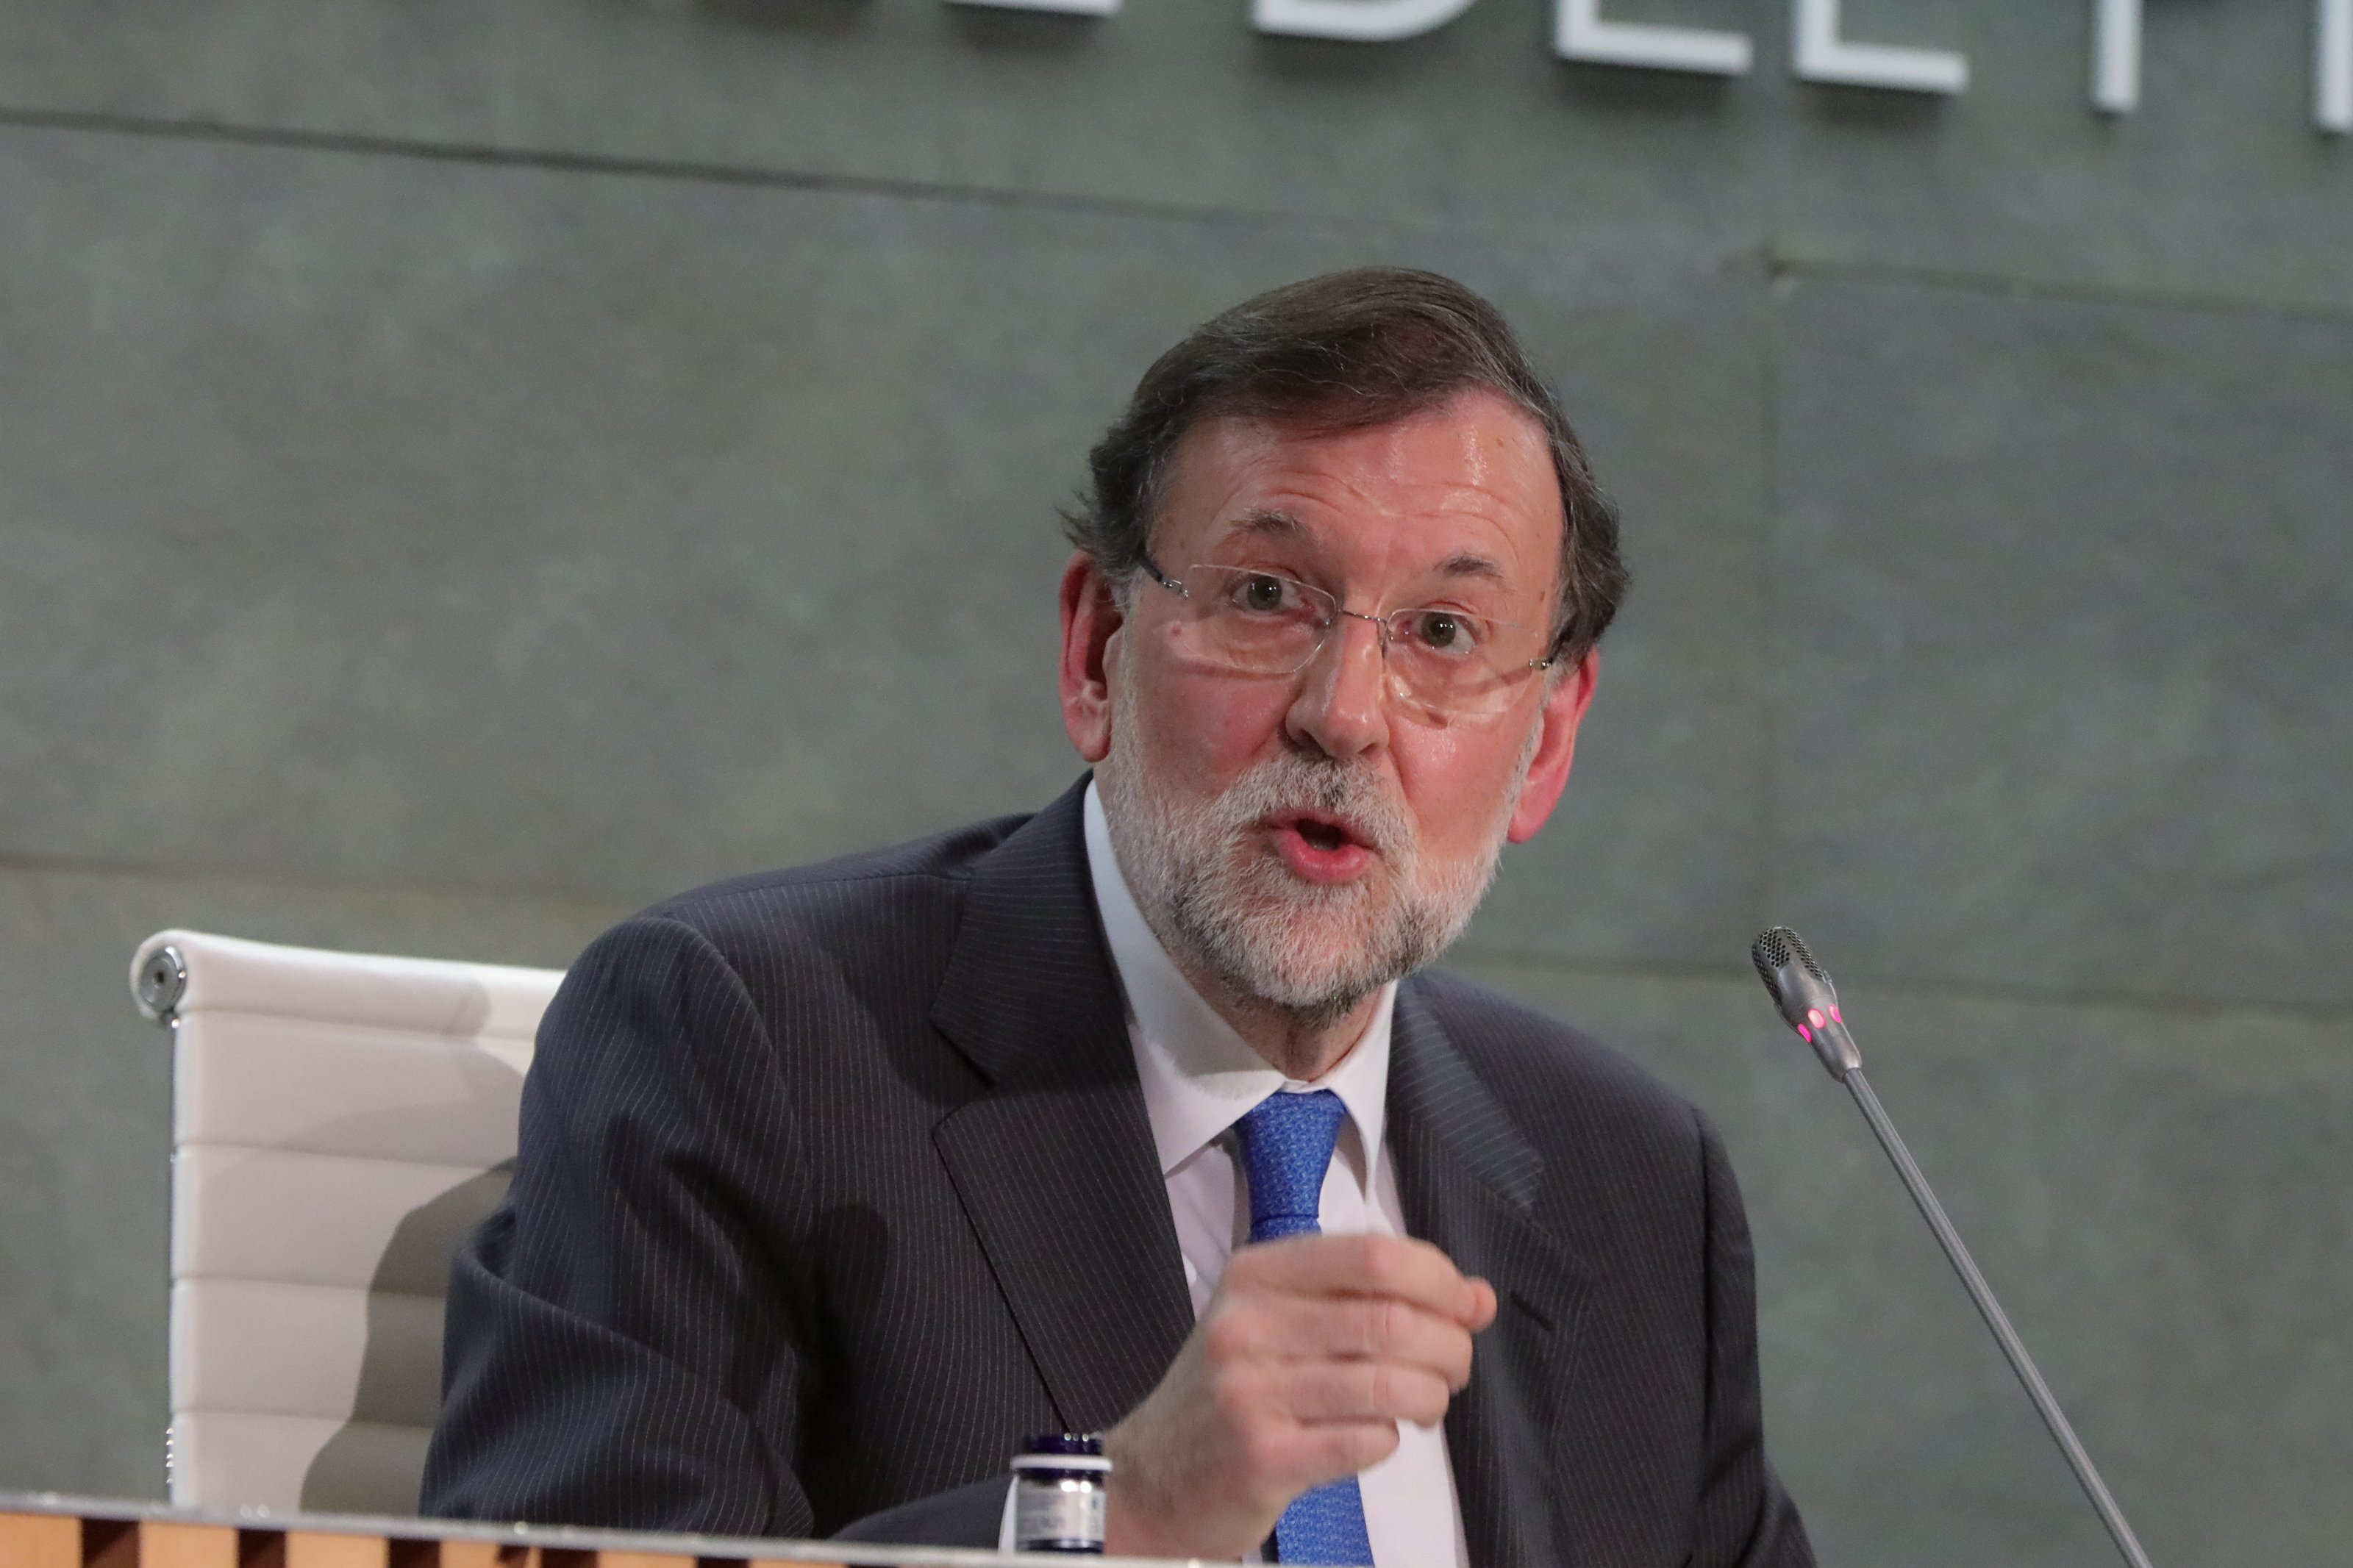 Un informe de Asuntos Internos vincula a Rajoy con el espionaje a Bárcenas